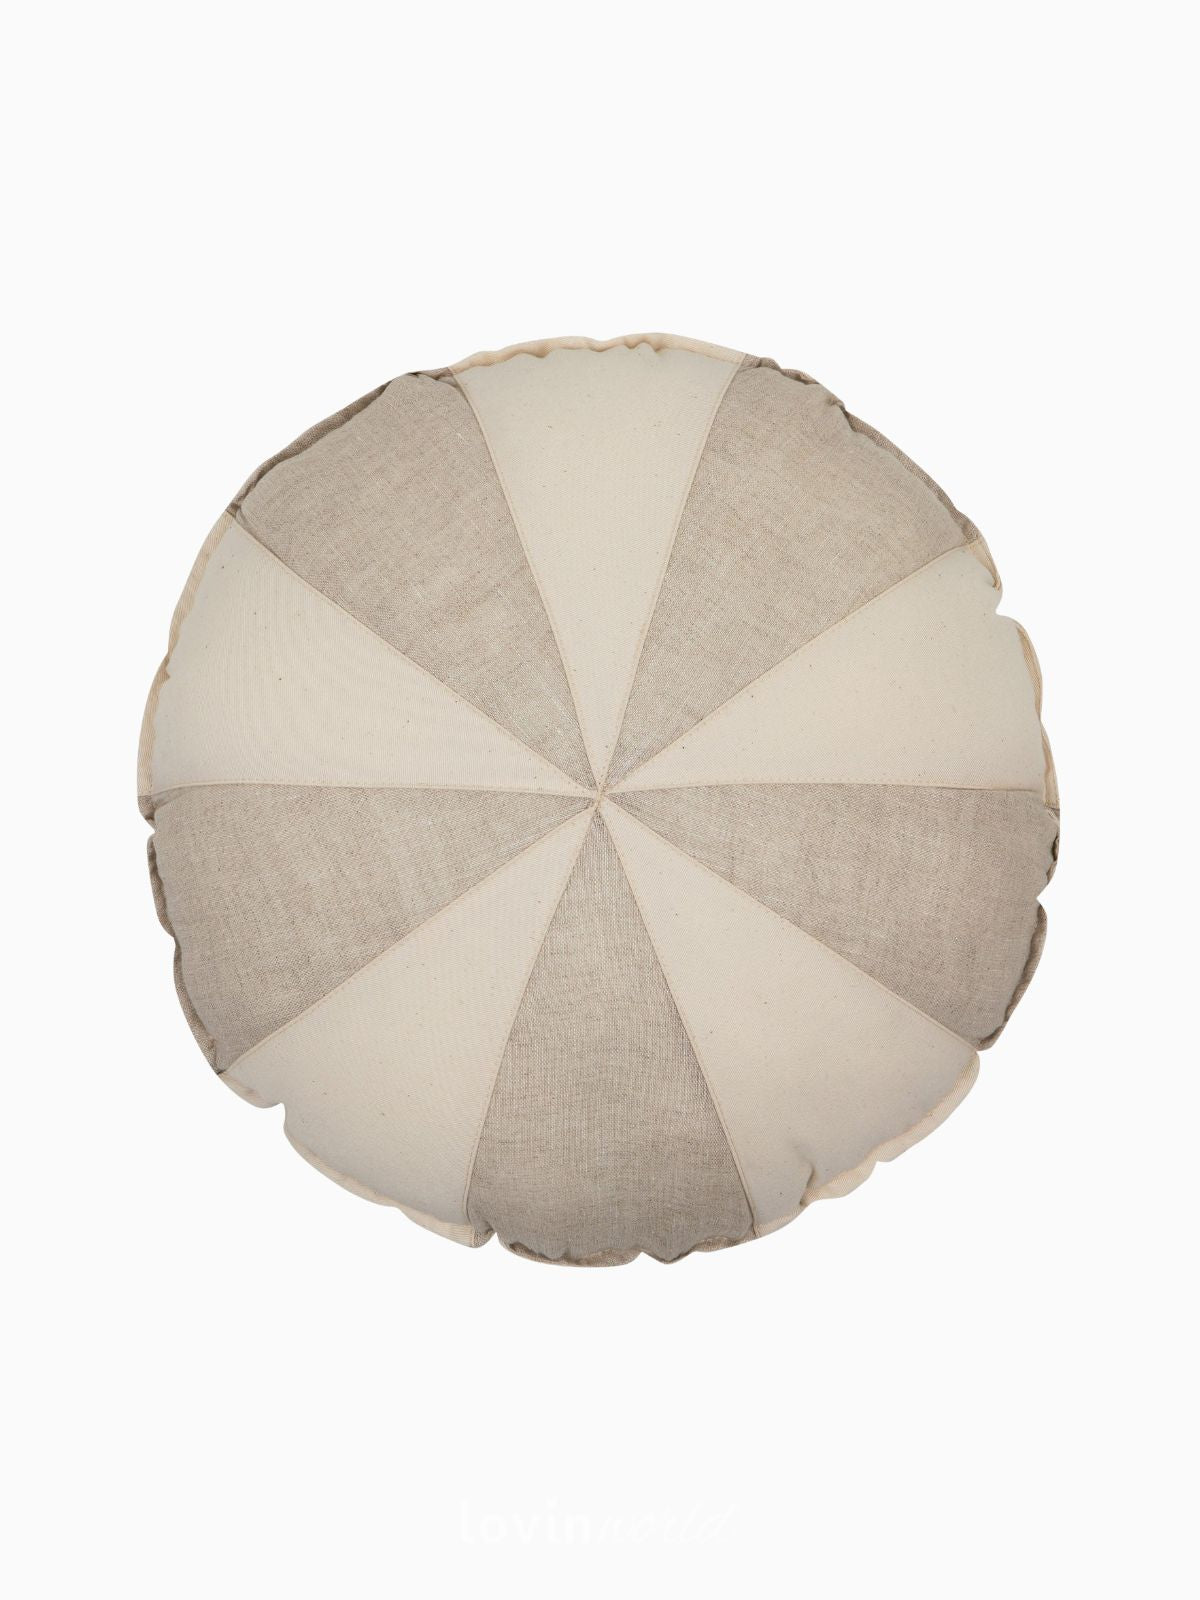 Cuscino Circo 100% lino e cotone in colore crema e beige 39x39 cm.-1